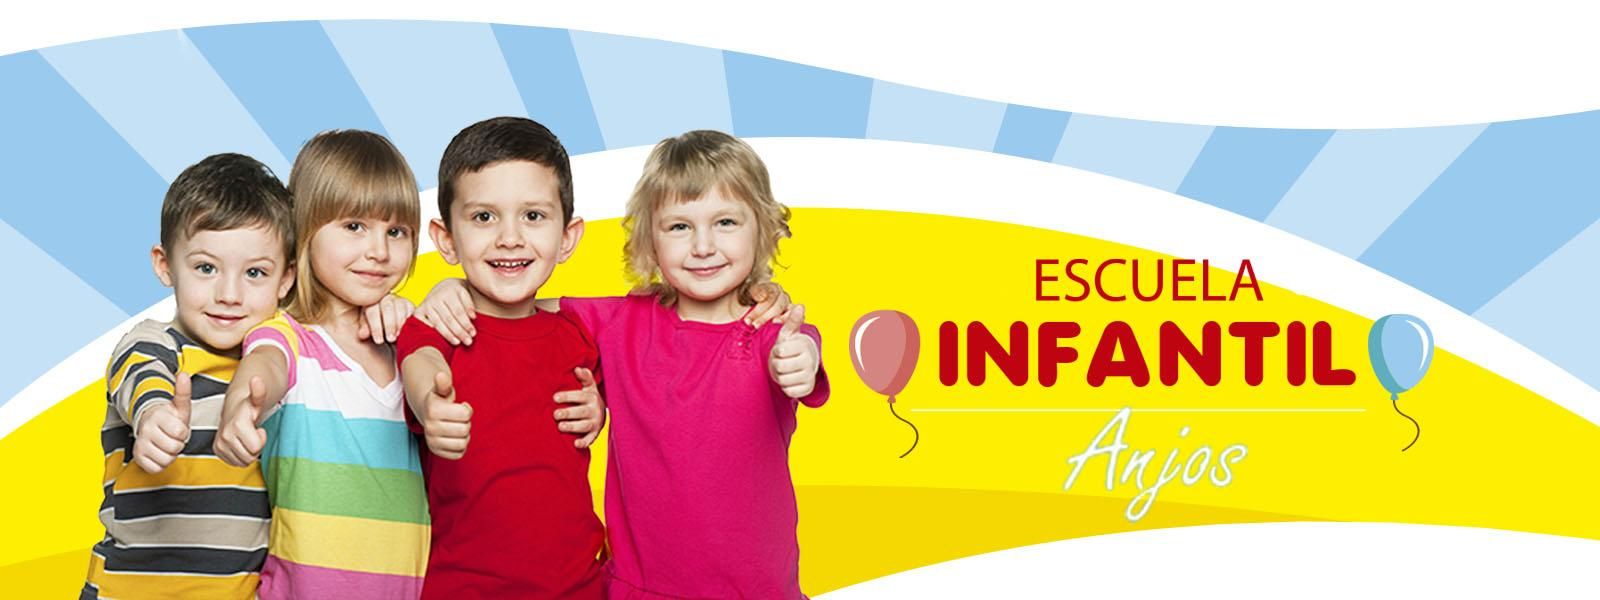 Escuela Infantil Anjos banner